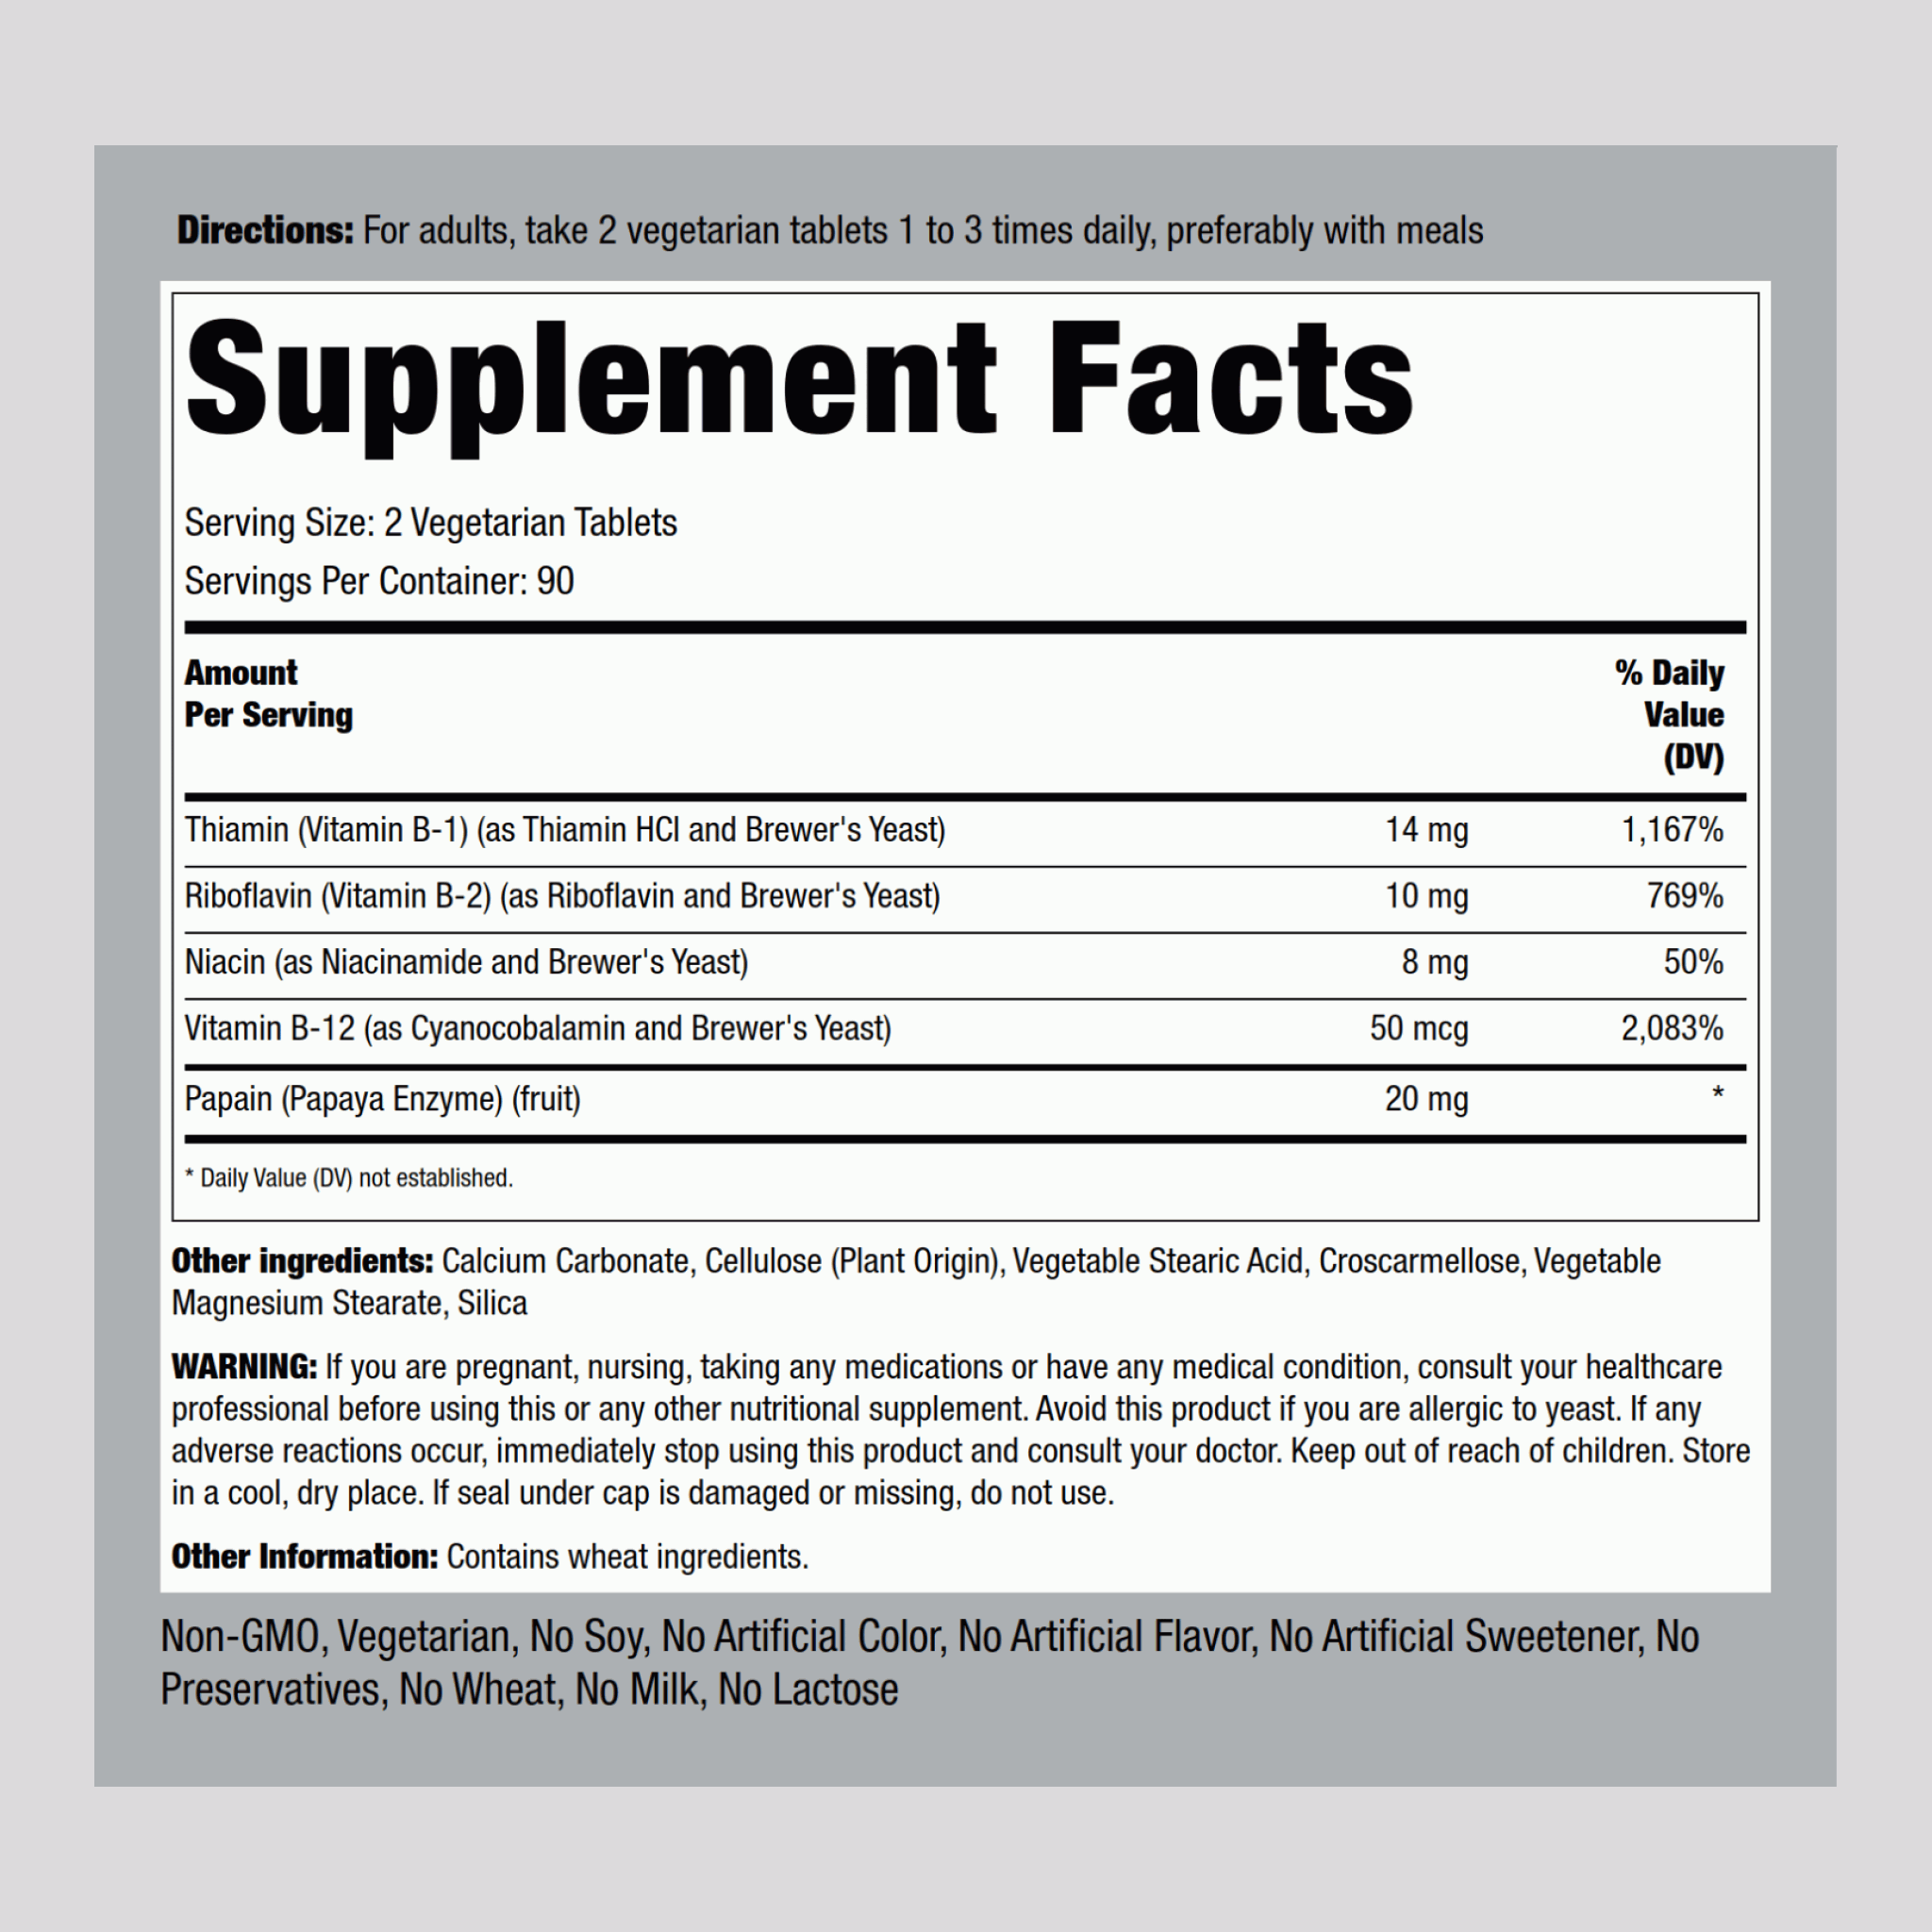 B Complex Plus Vitamin B-12, 180 Tablets